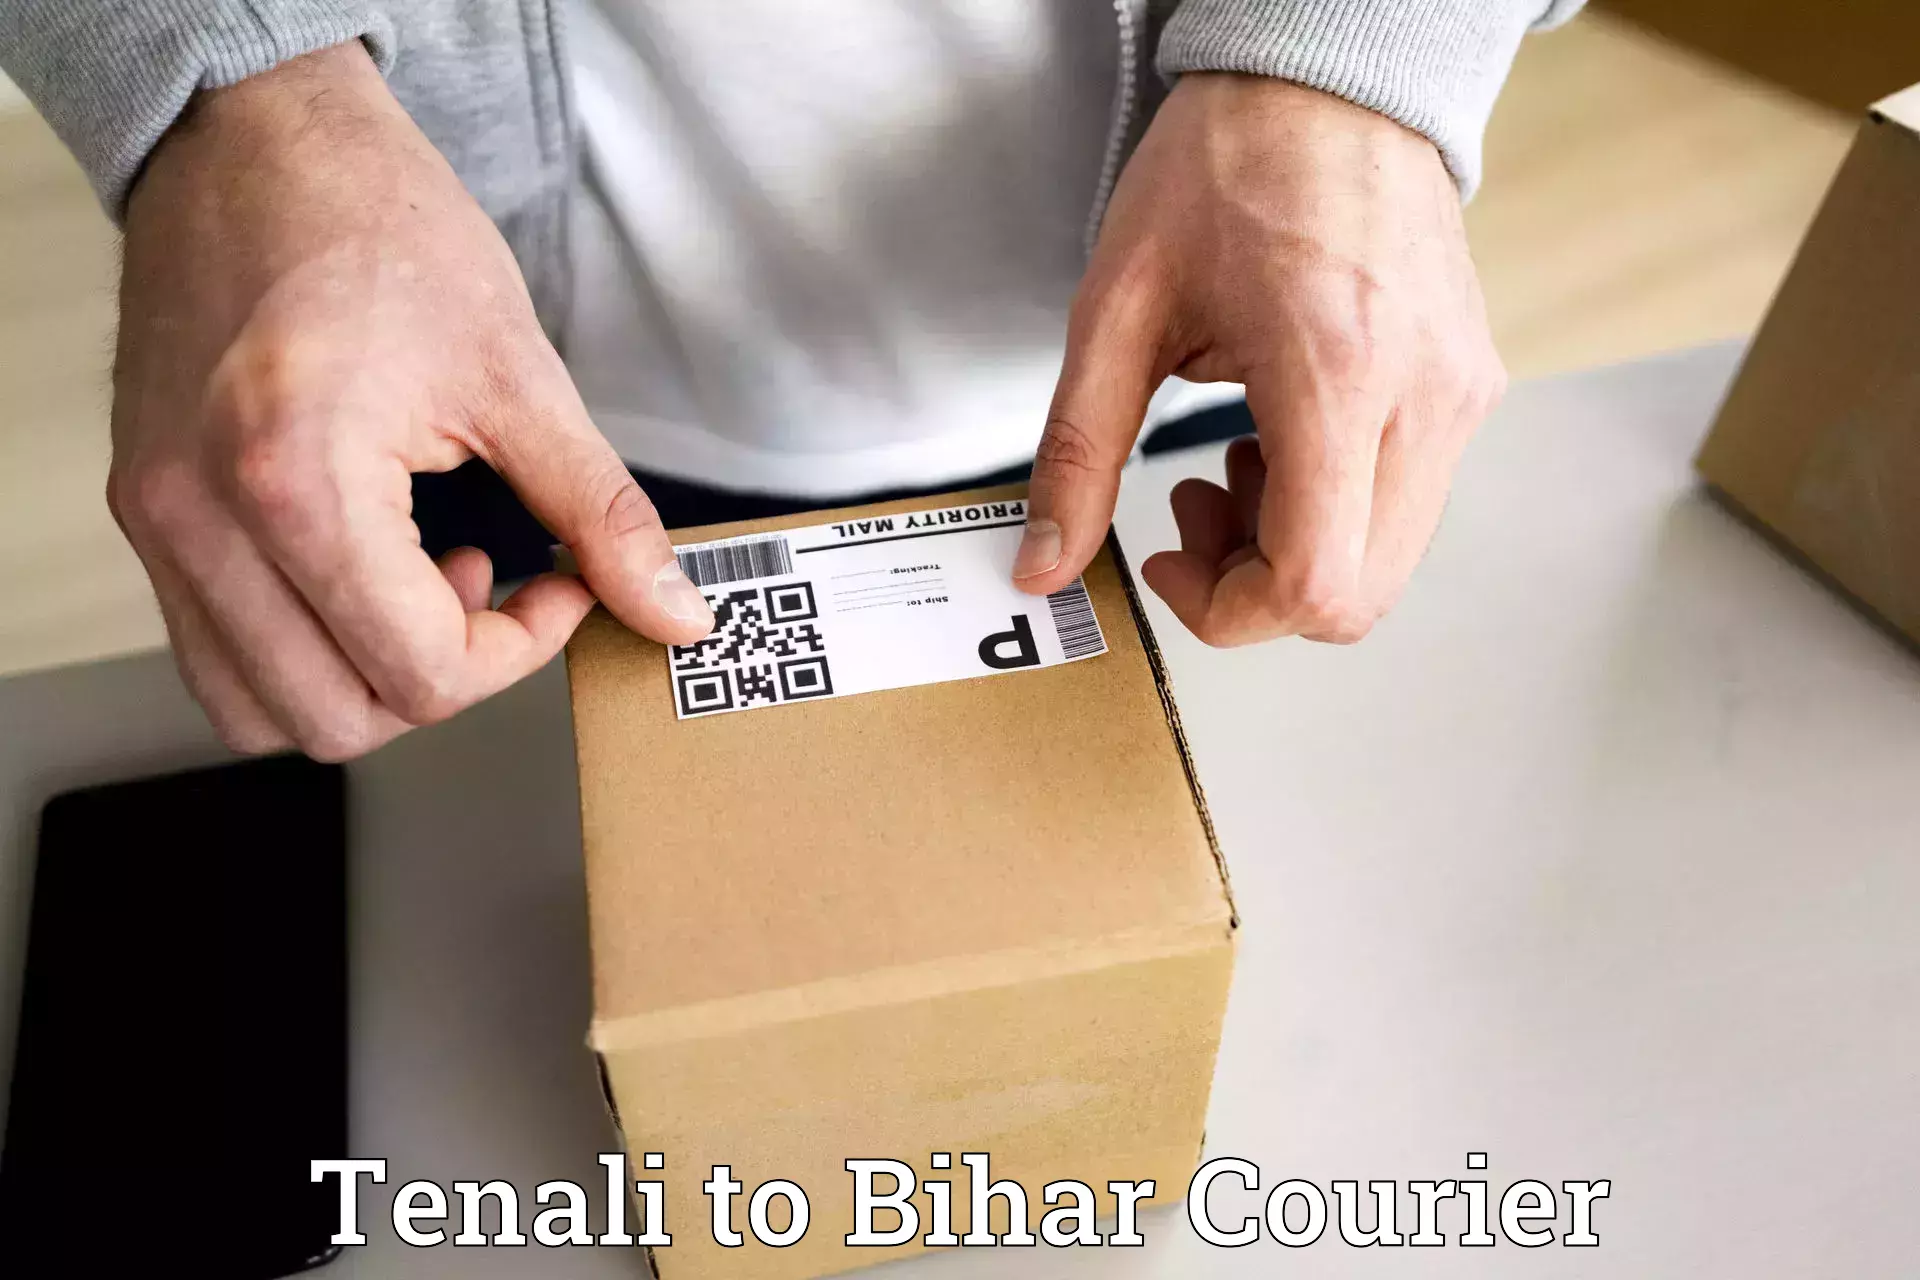 Reliable logistics providers Tenali to Bakhtiarpur